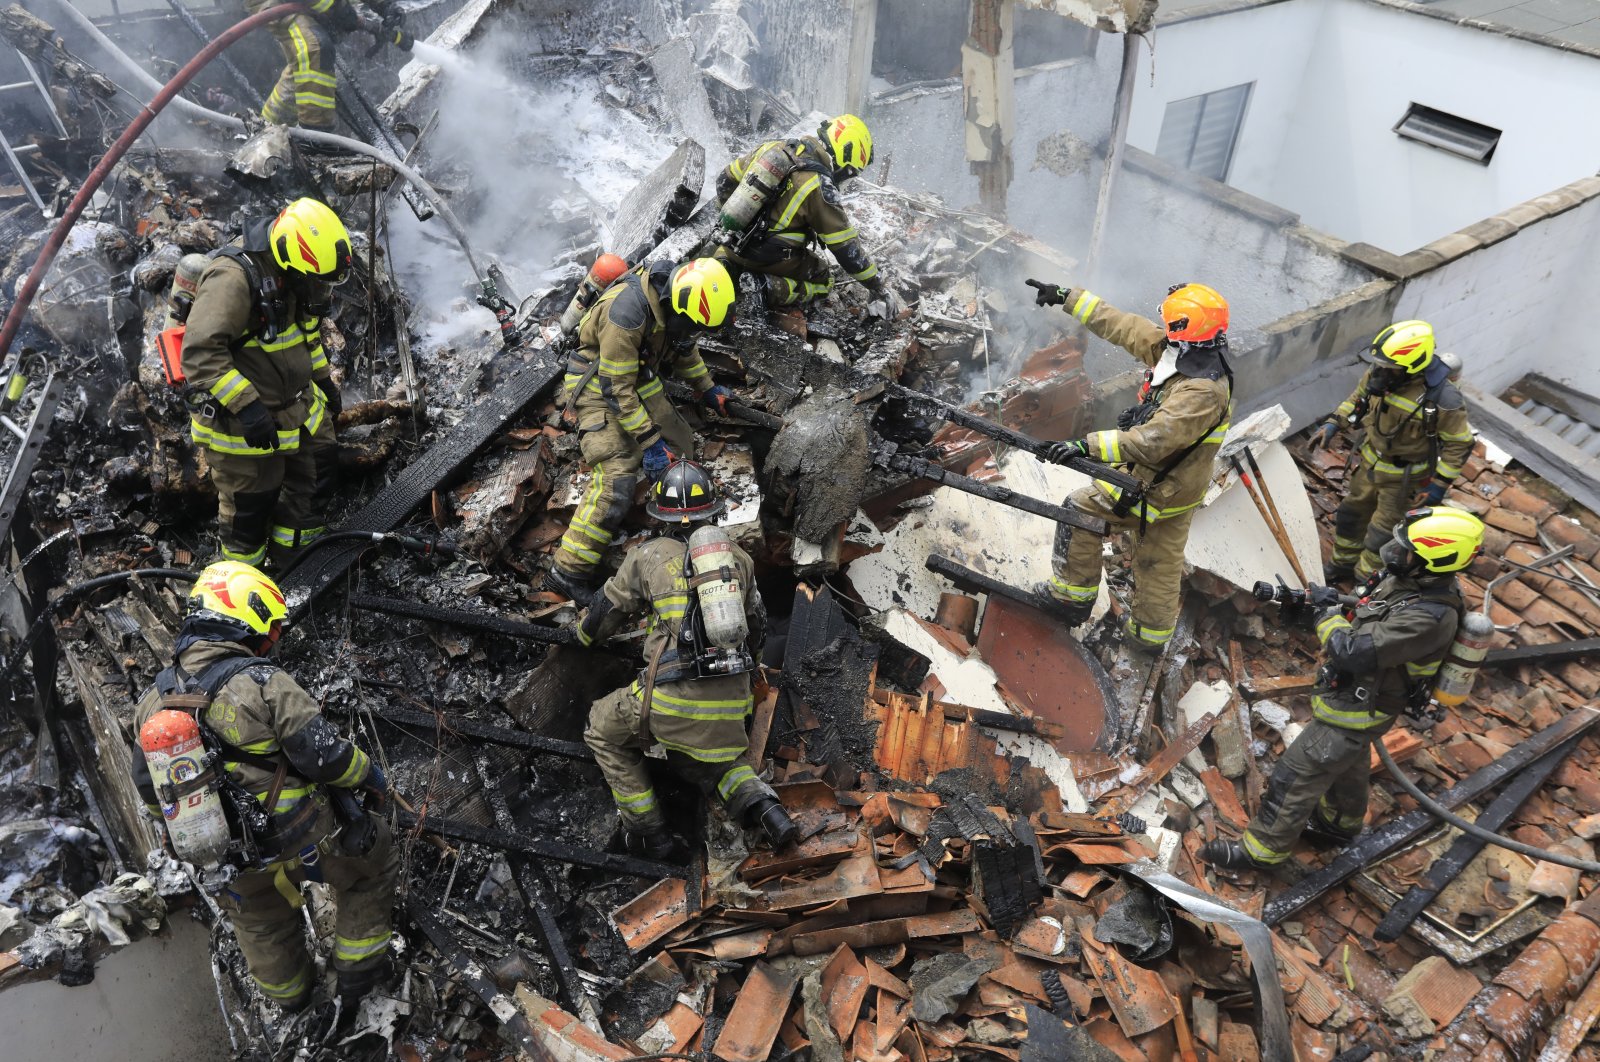 Semua 8 tewas setelah pesawat menabrak daerah perumahan di Kolombia